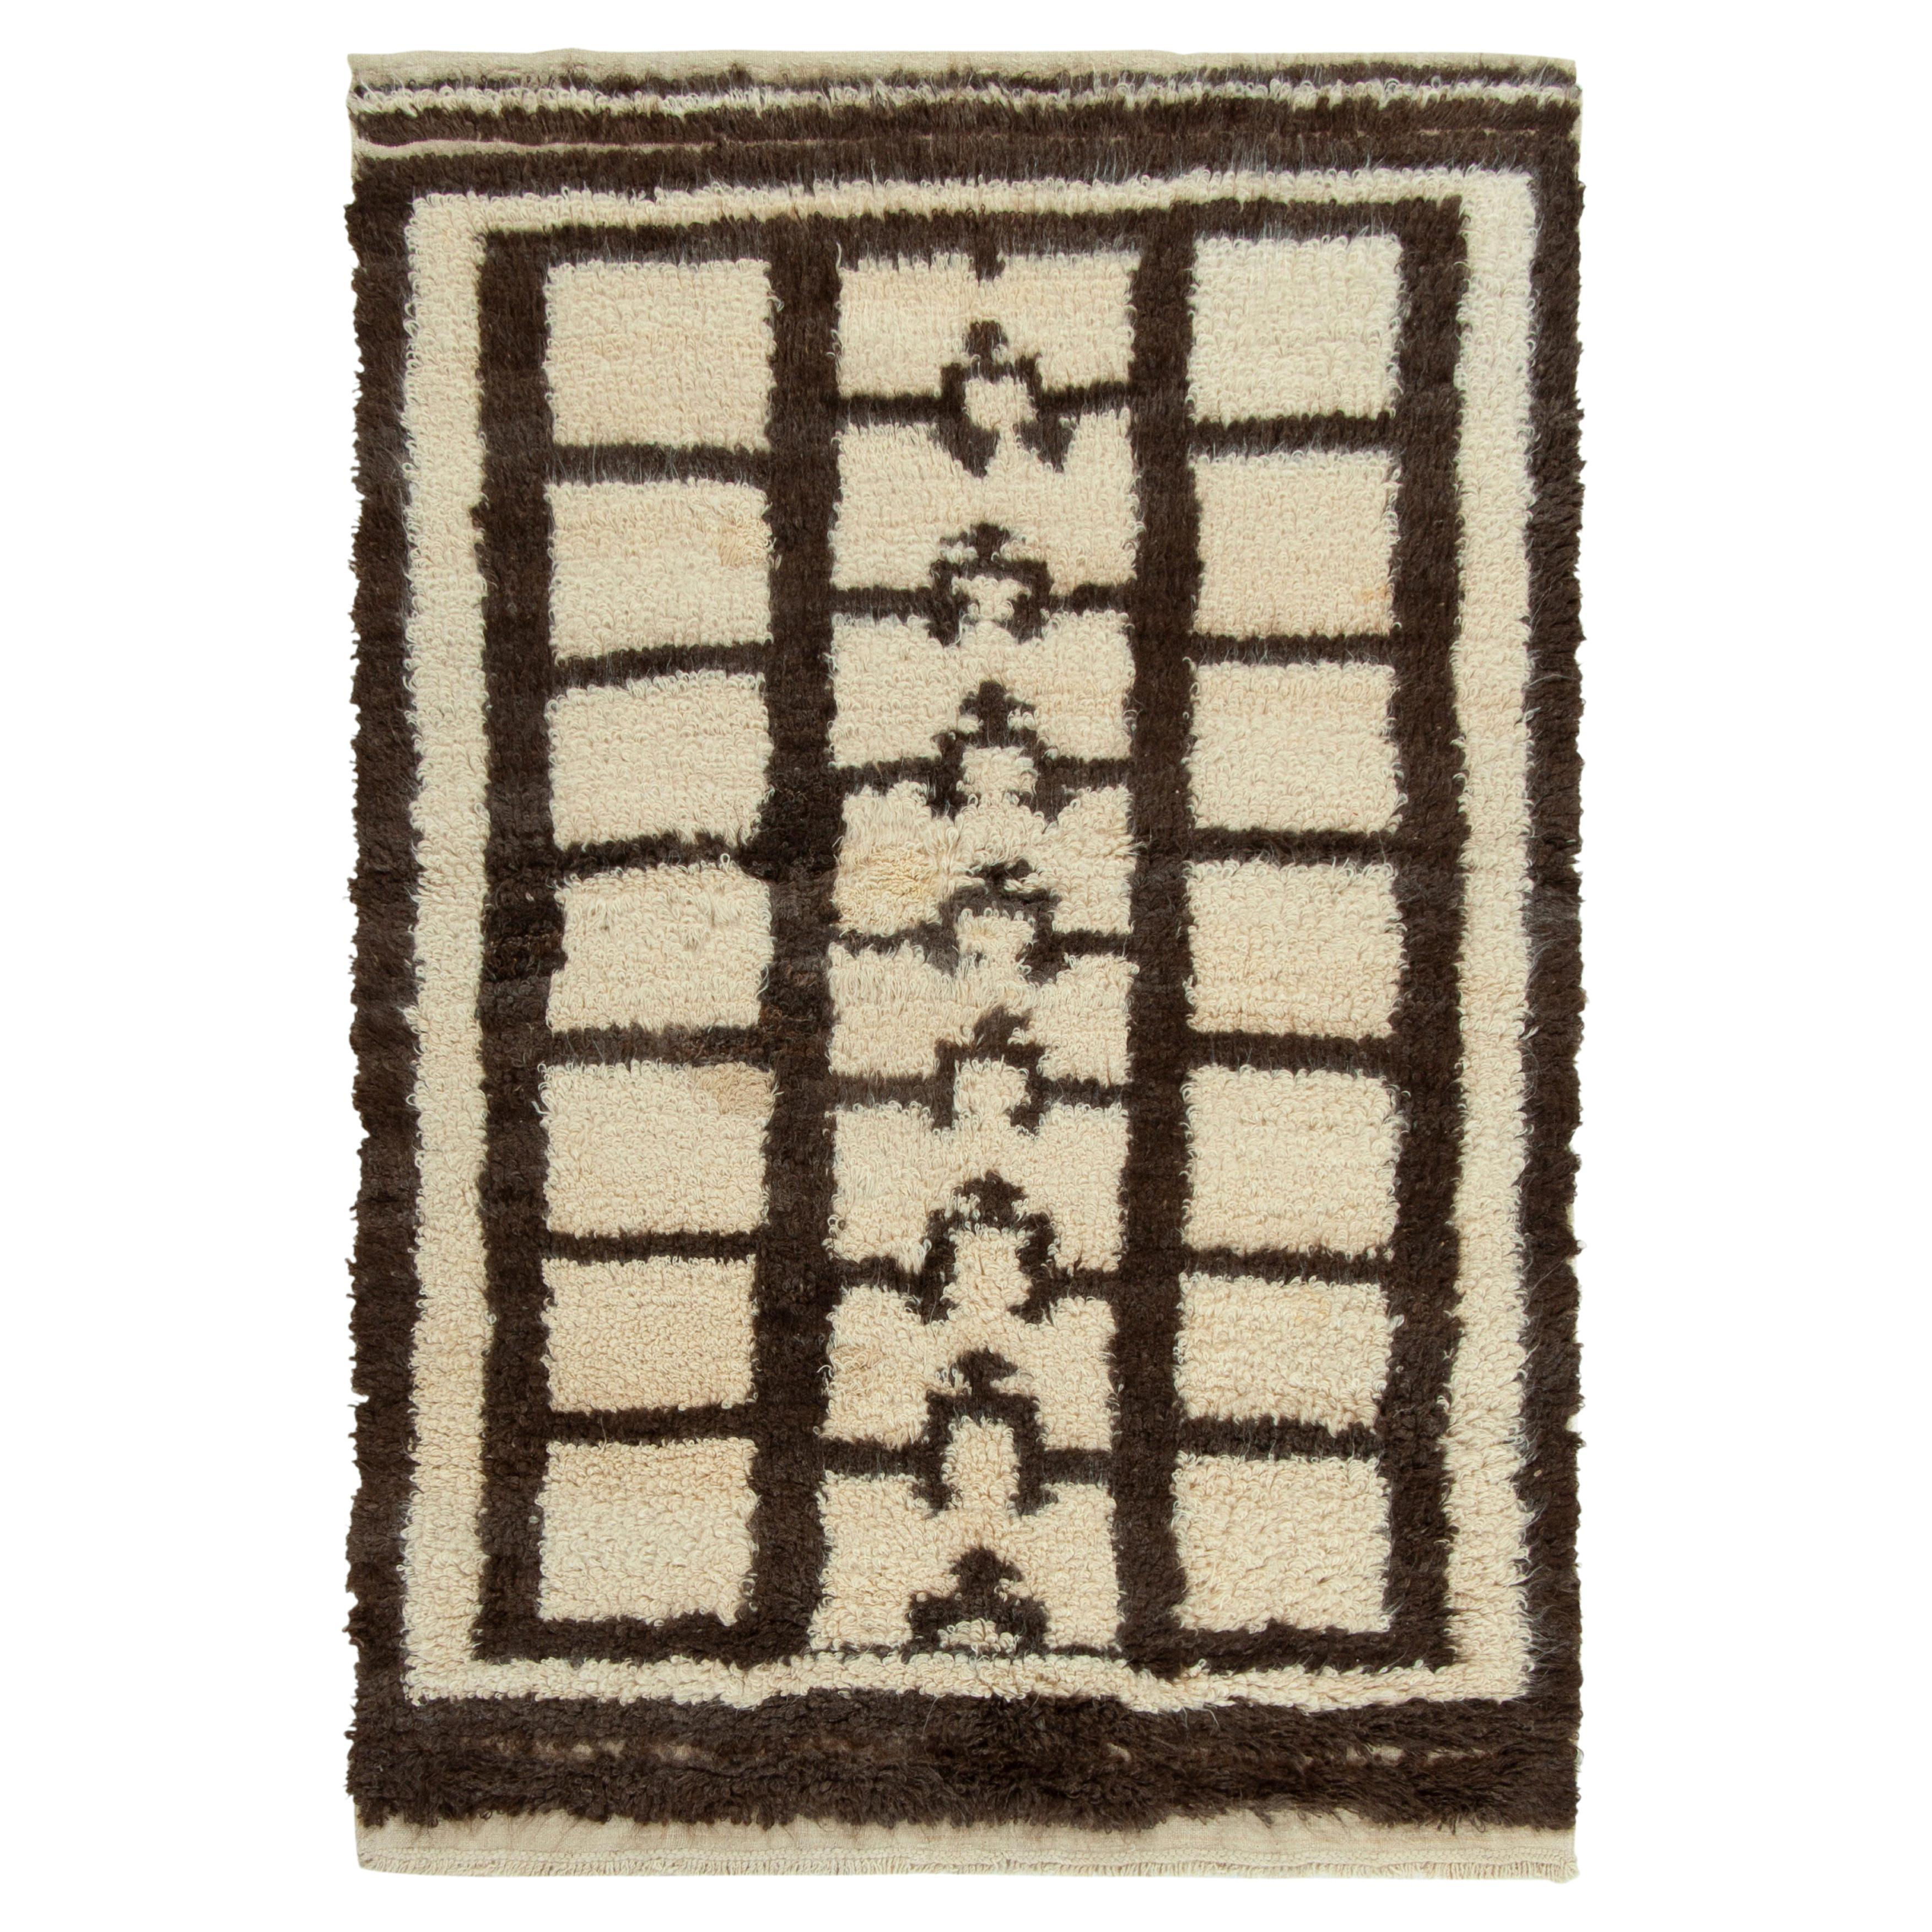 1950s Vintage Tulu Rug in Brown-Black & White Geometric Pattern by Rug & Kilim